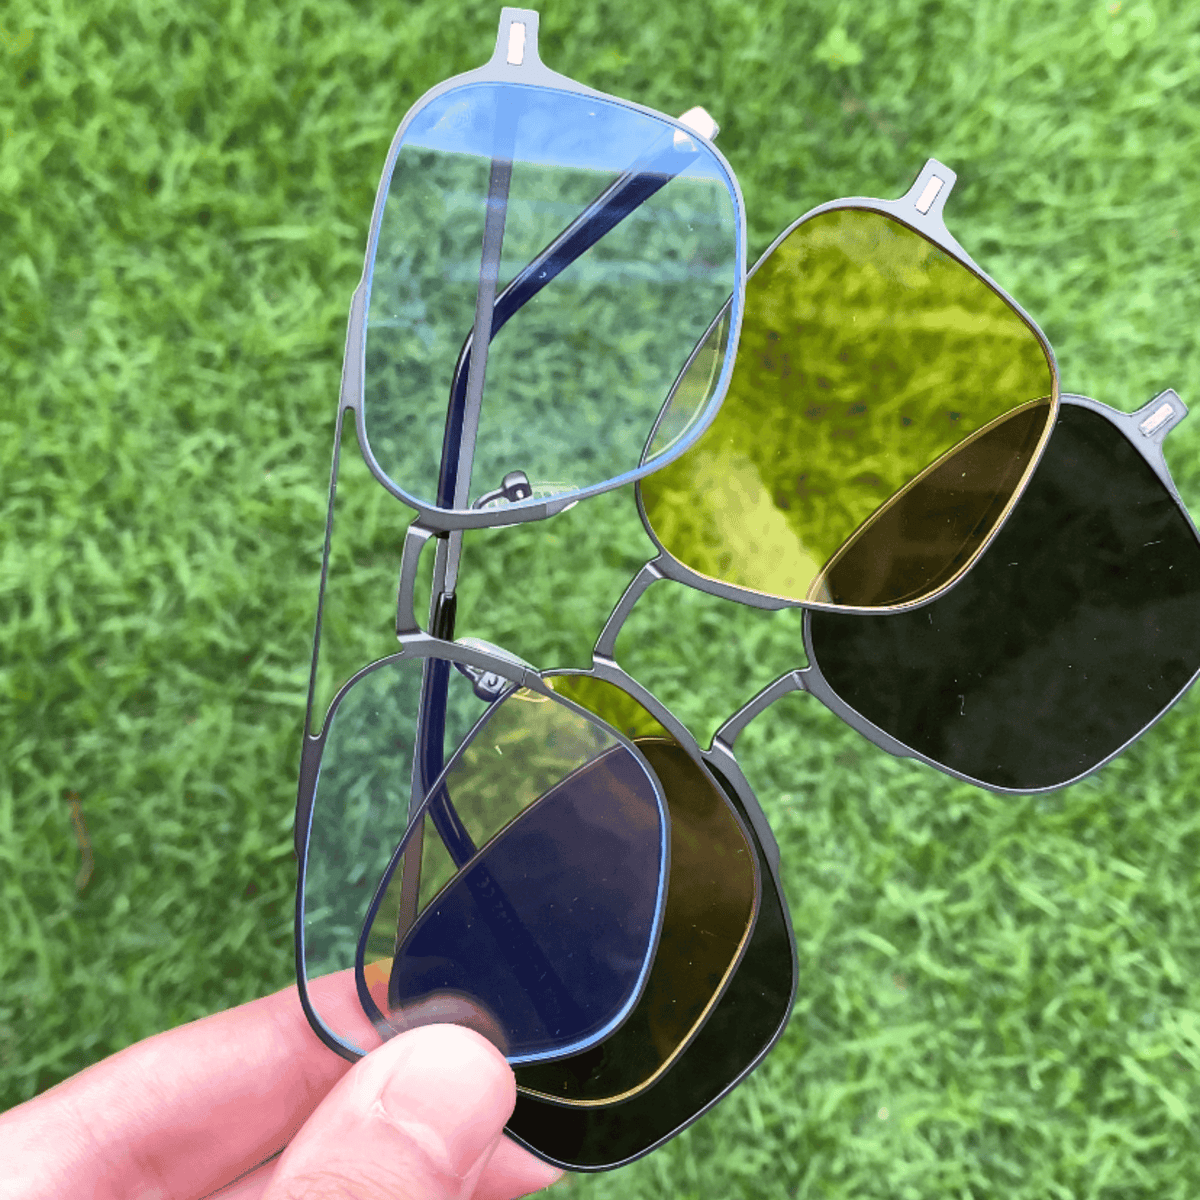 Óculos Polarizado 3 em 1 com Armações em Metal Inox + Proteção Lente Anti Azul BRINDE - Protark Shop